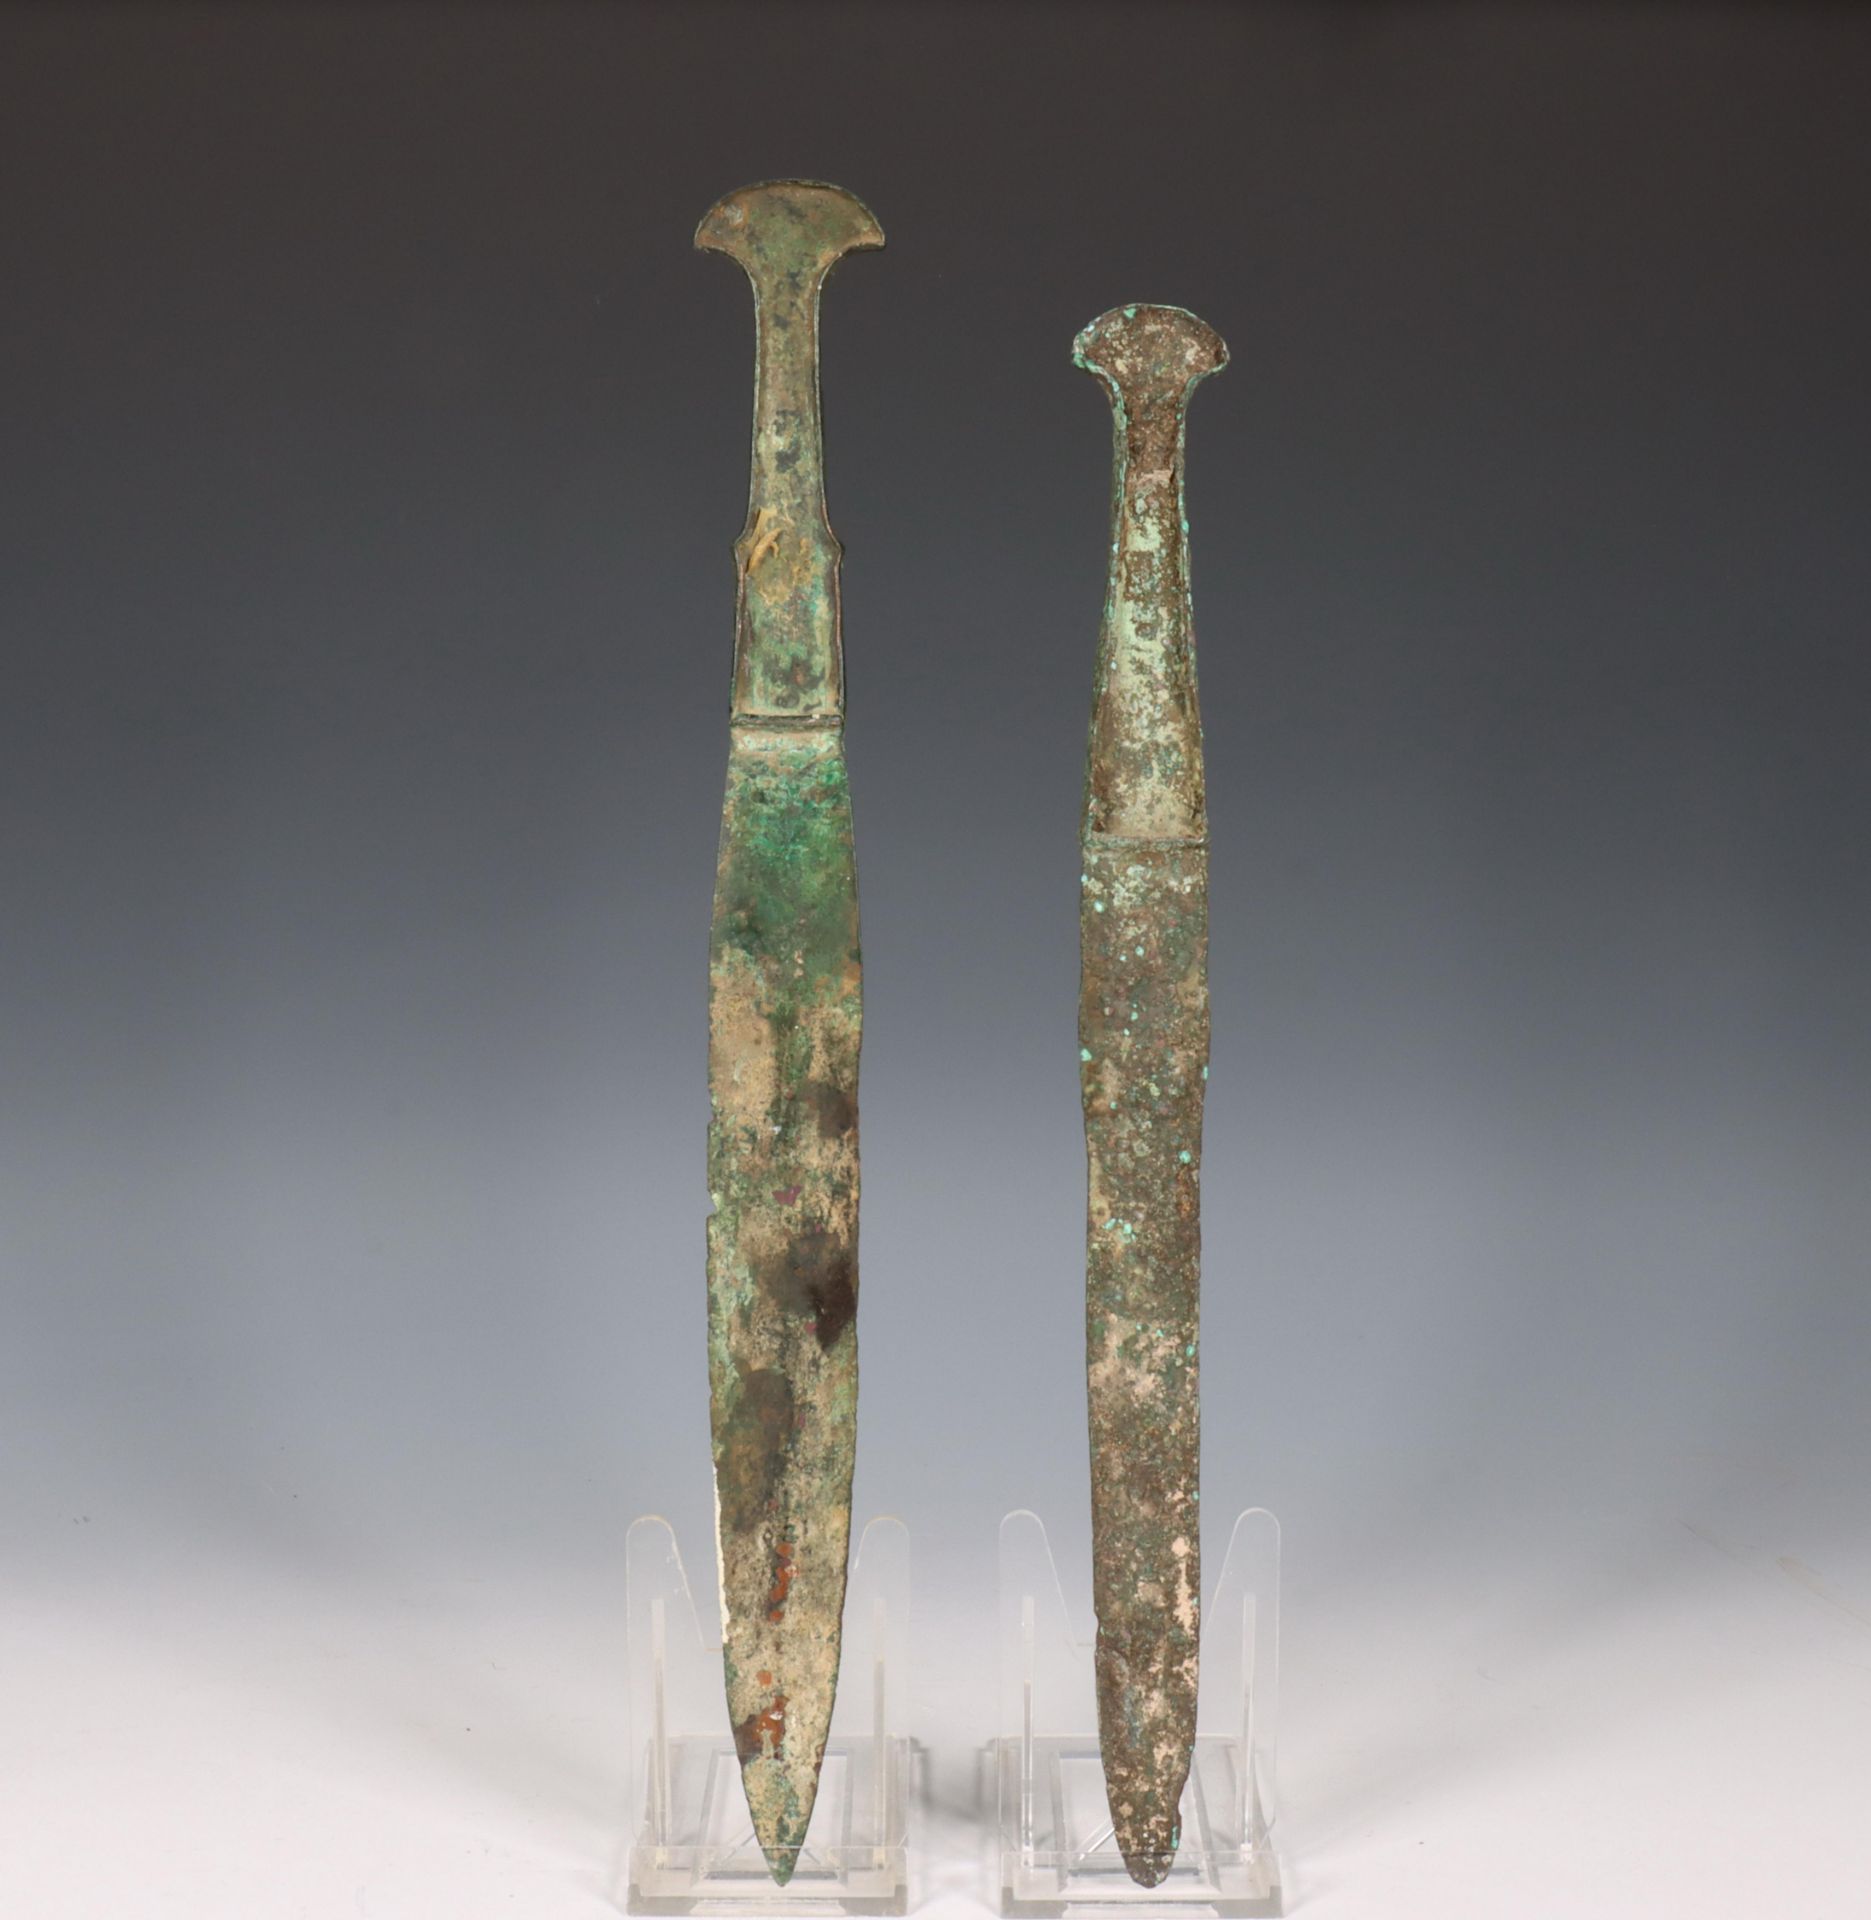 Luristan, two bronze ceremonial daggers, ca. 800 BC.